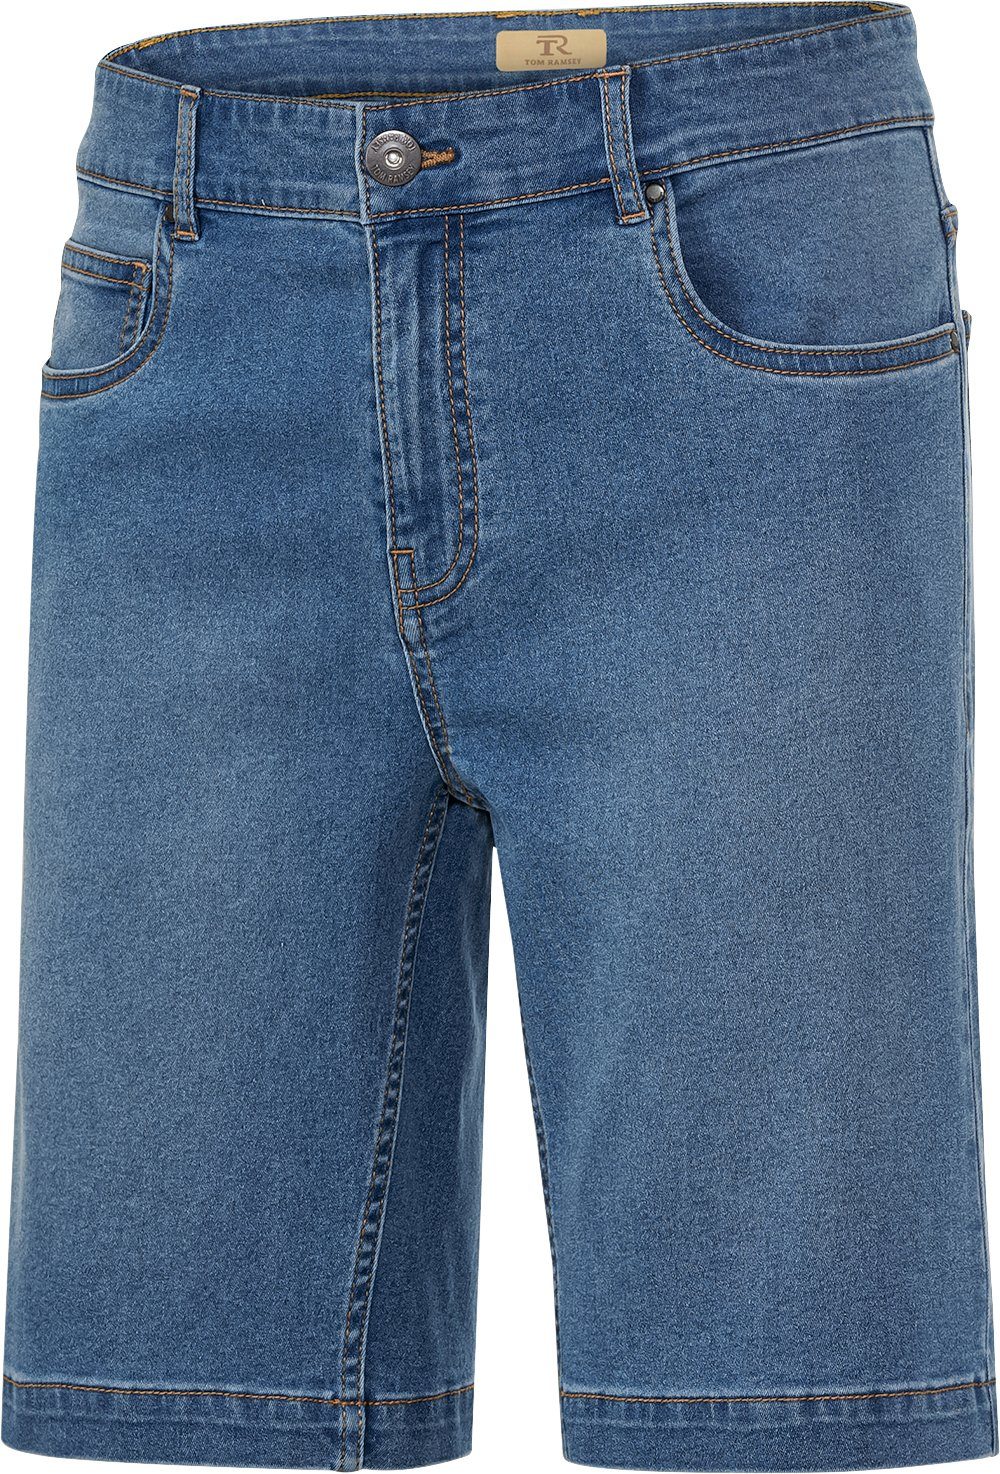 Tom Ramsey Jeansbermudas im 5-Pocket-Style mit optimaler Passform durch flexiblen Bund hellblau